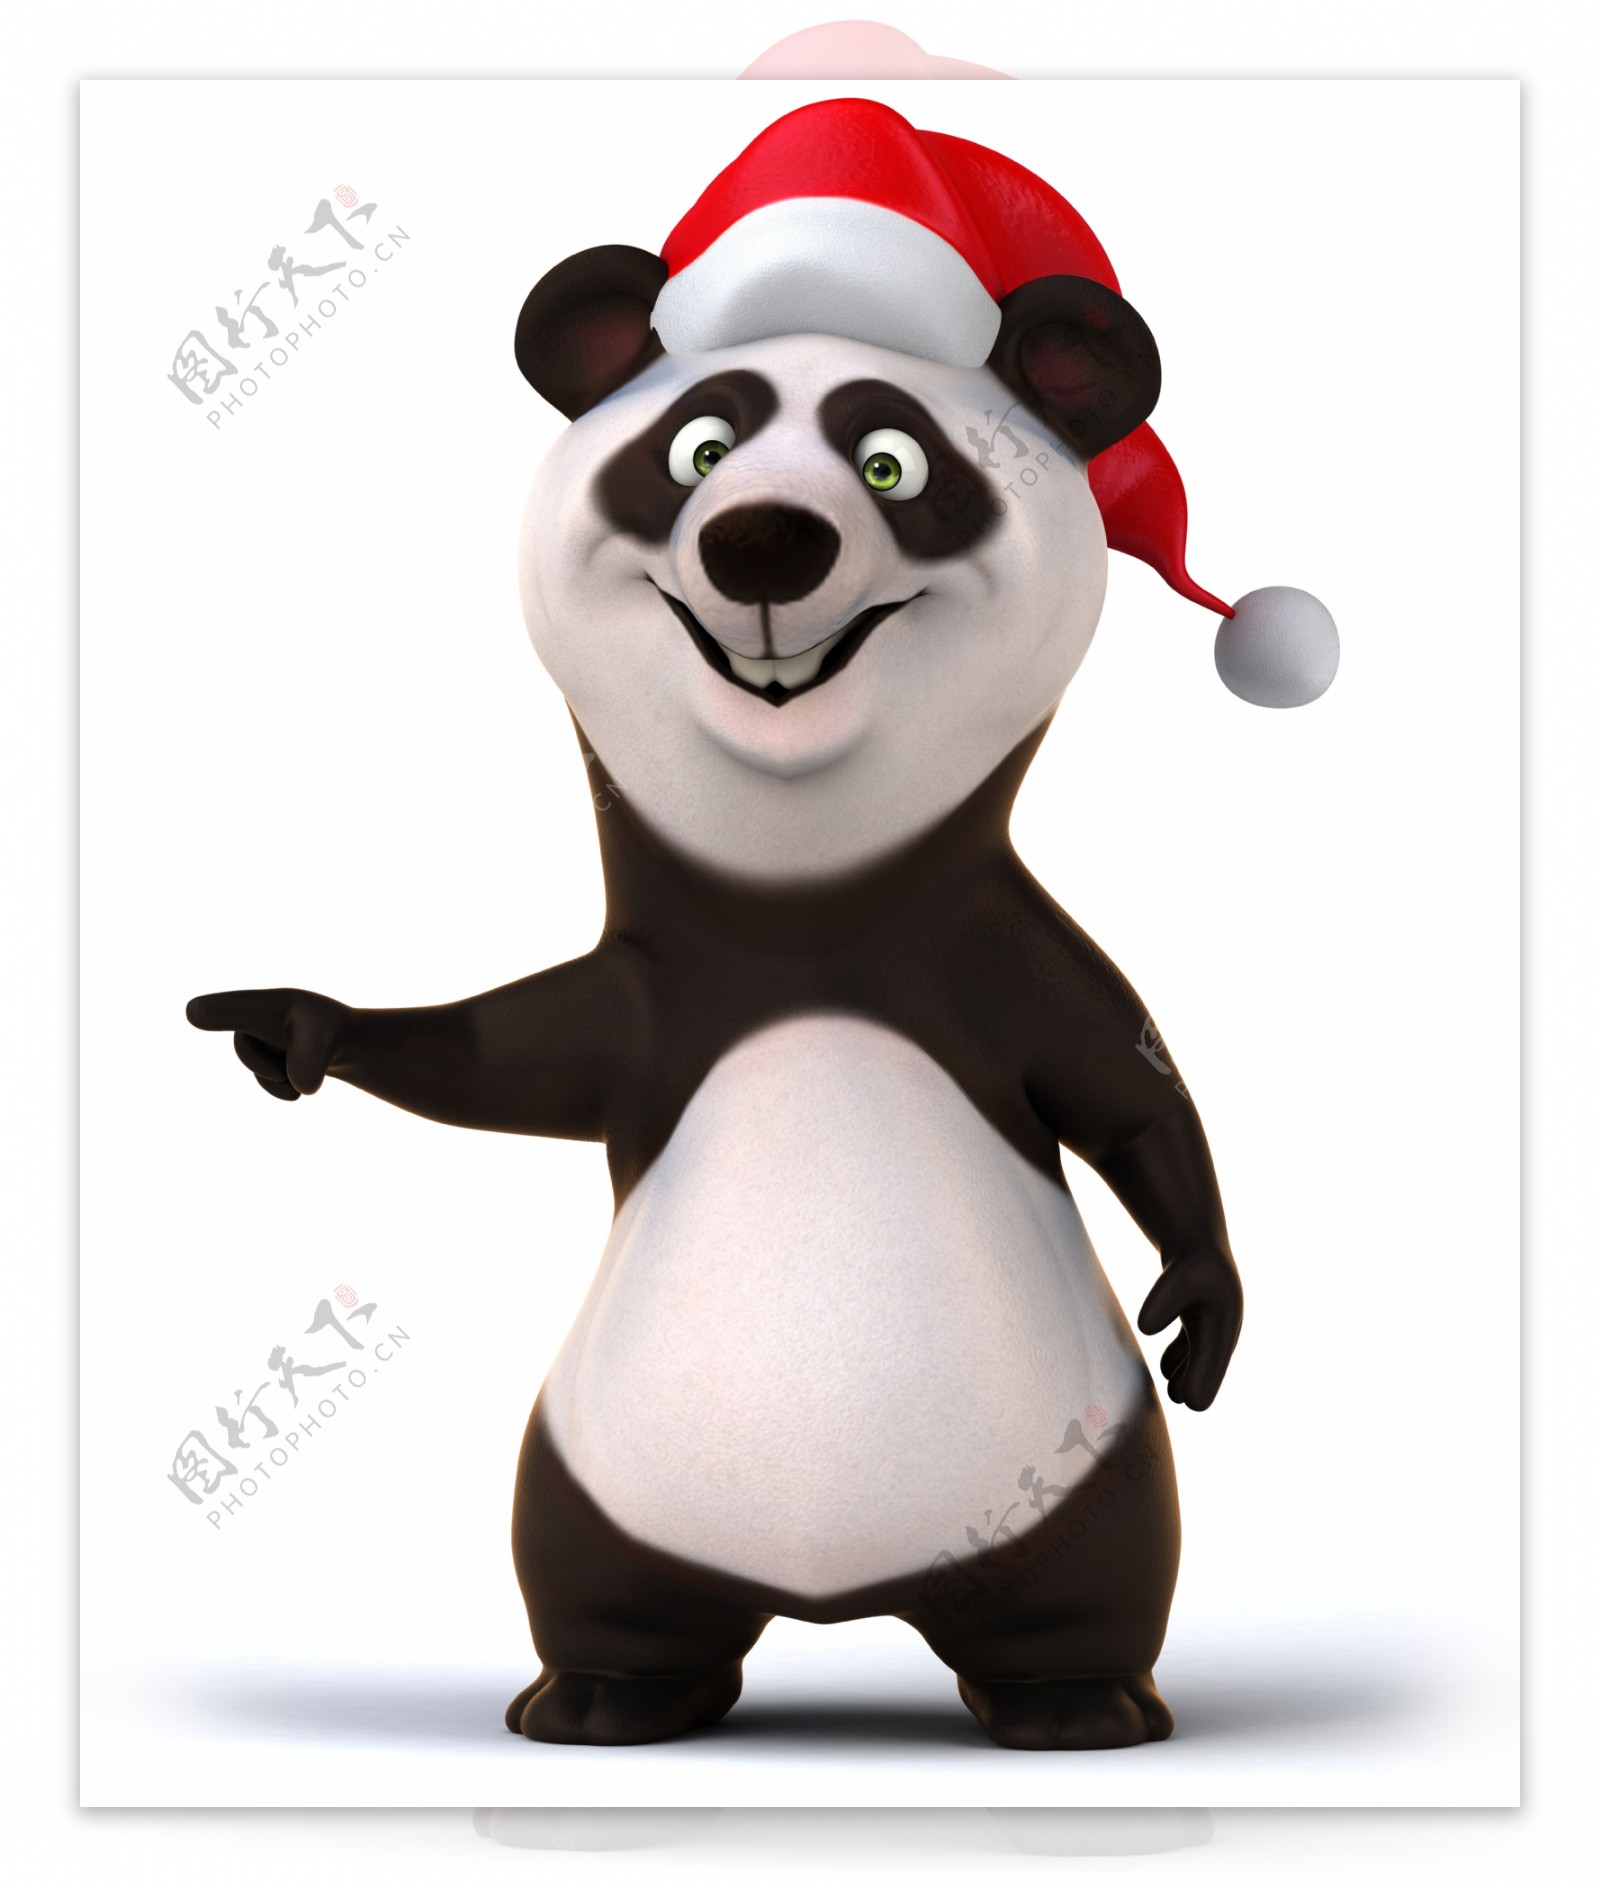 戴圣诞帽的熊猫卡通画图片